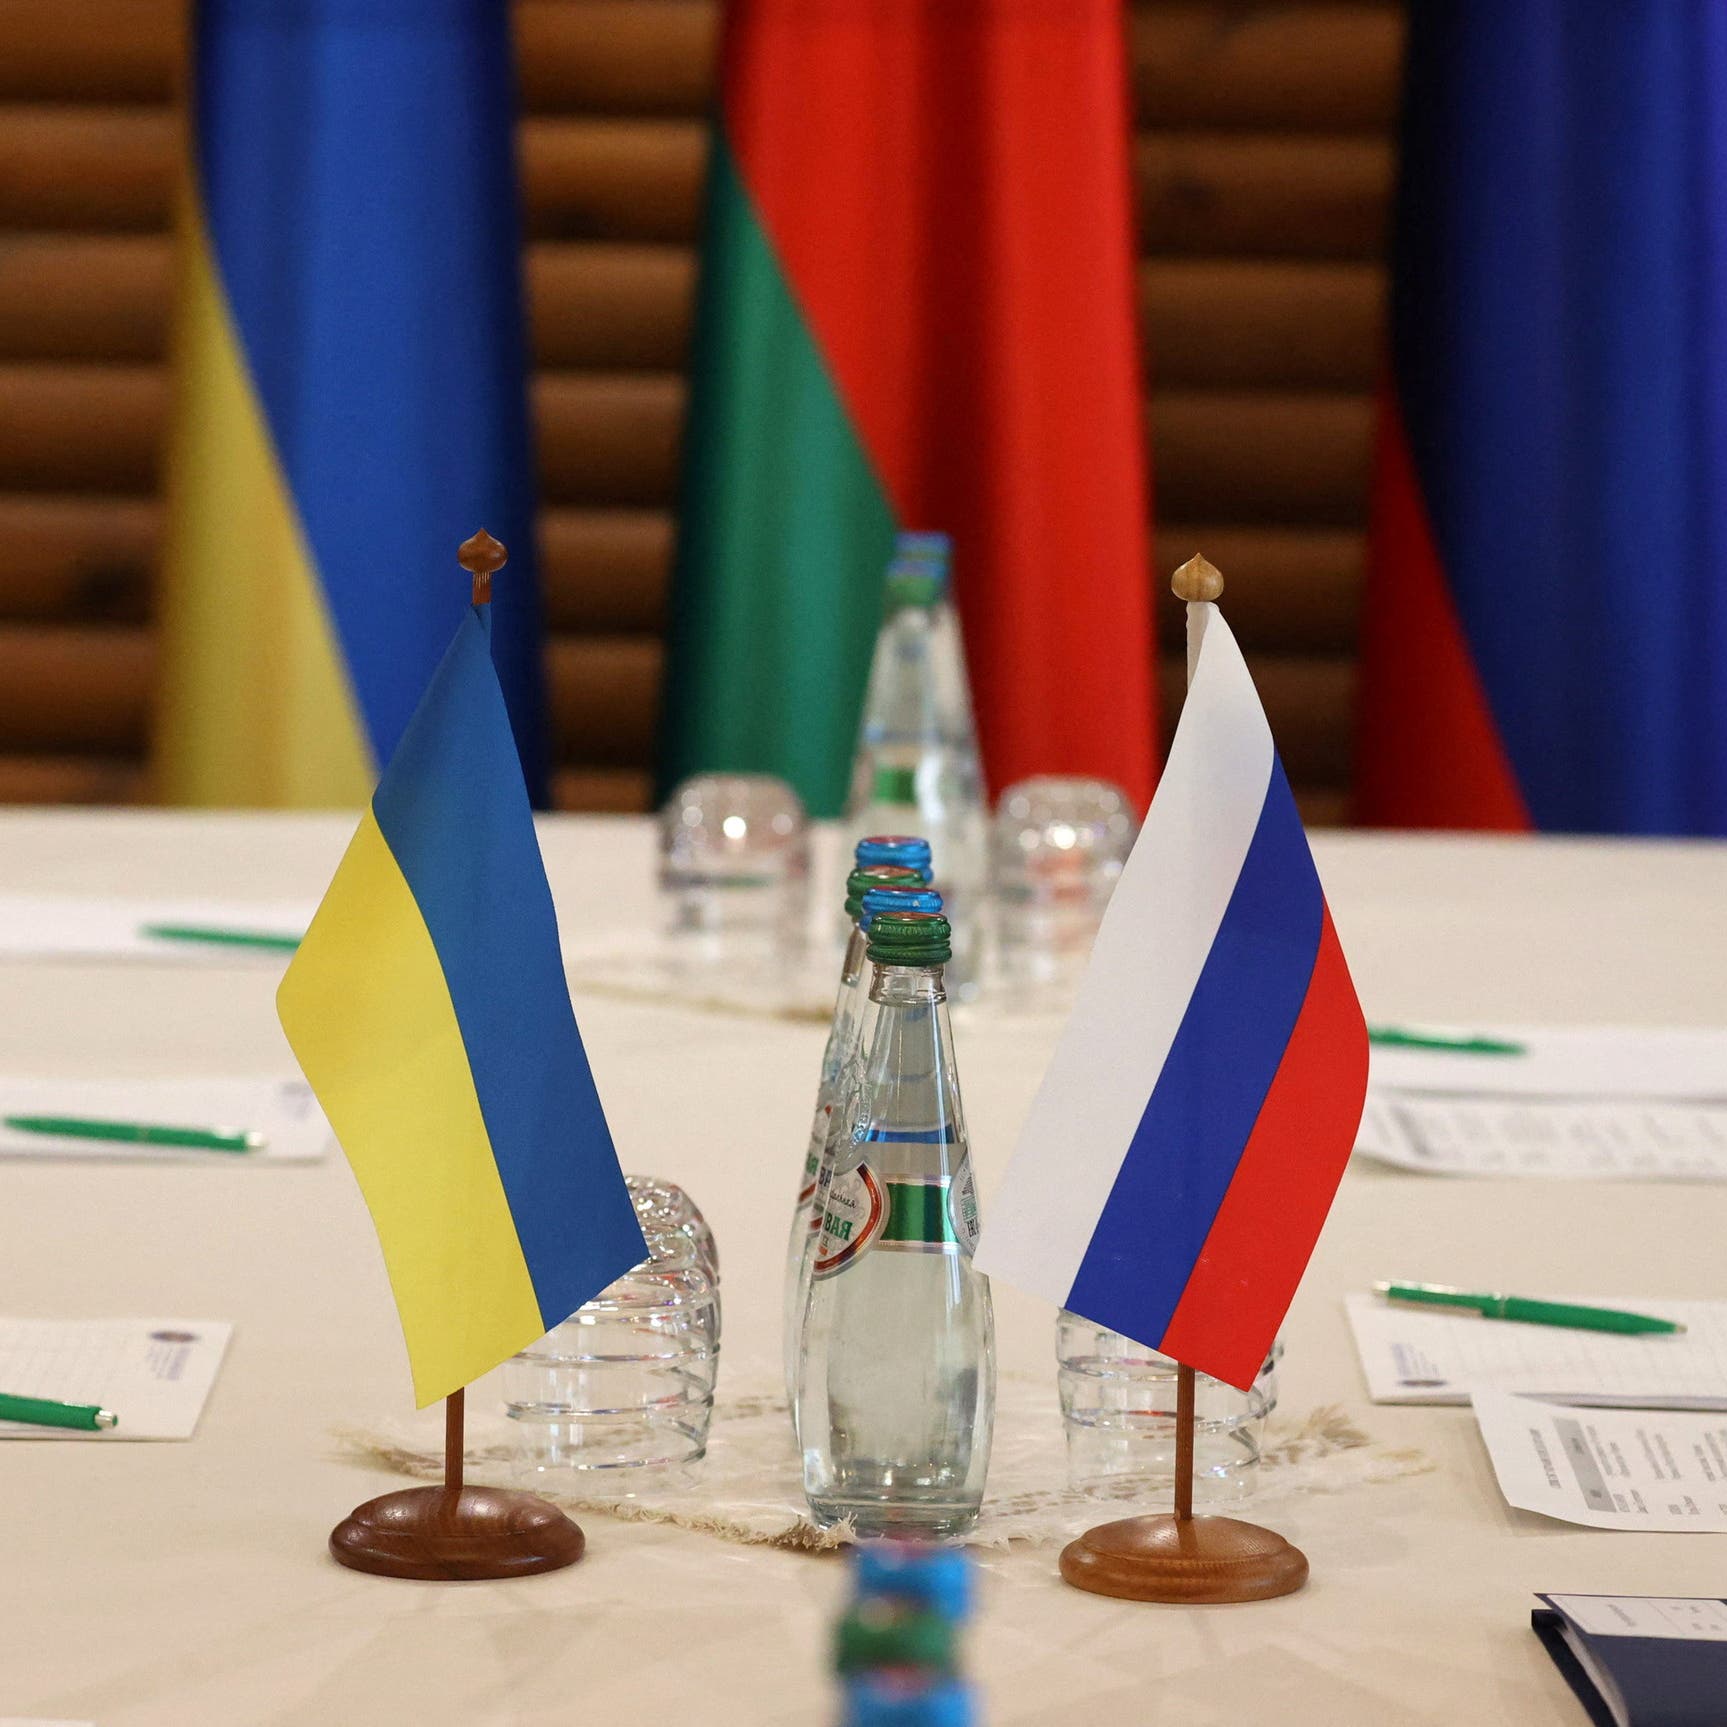 كييف: المفاوضات أصبحت بناءة.. وروسيا تغير موقفها